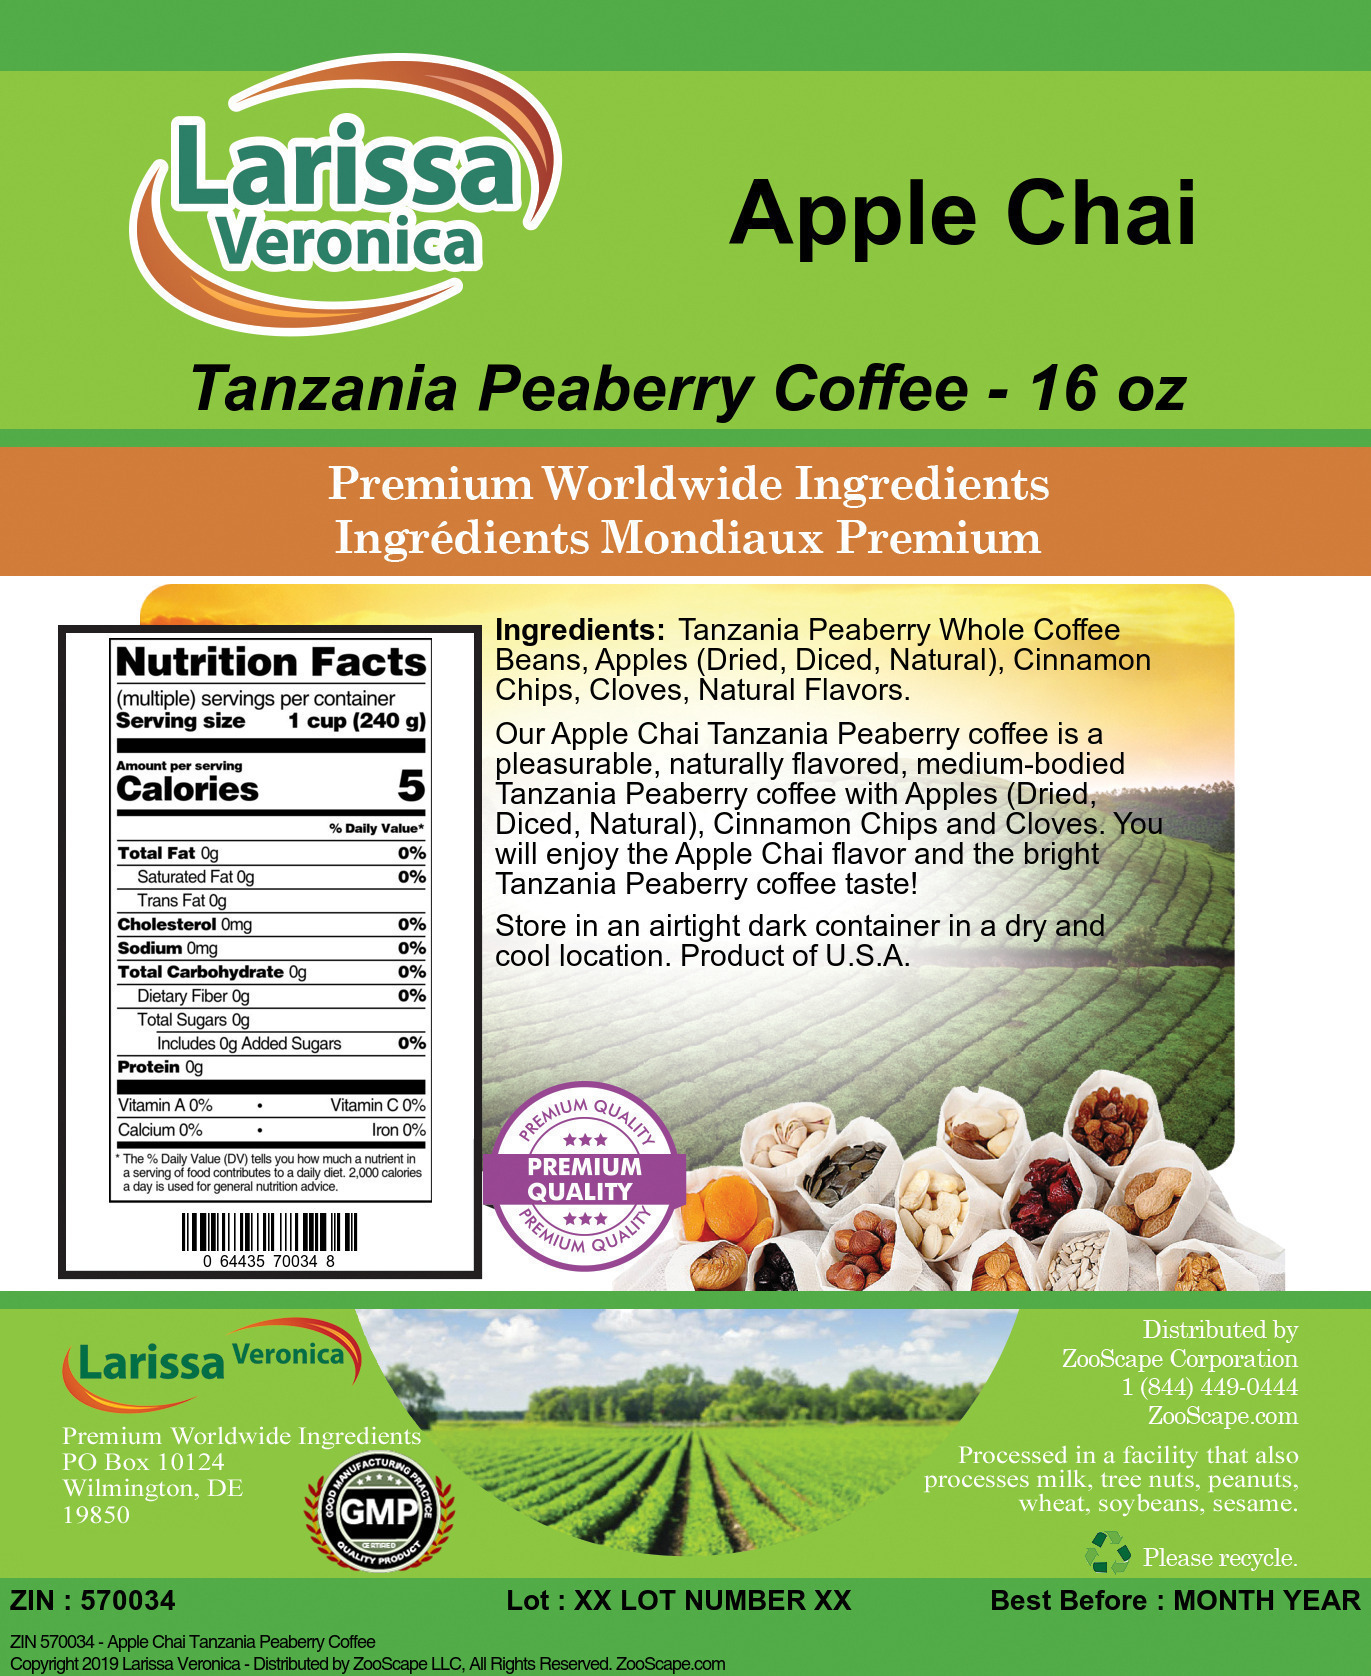 Apple Chai Tanzania Peaberry Coffee - Label